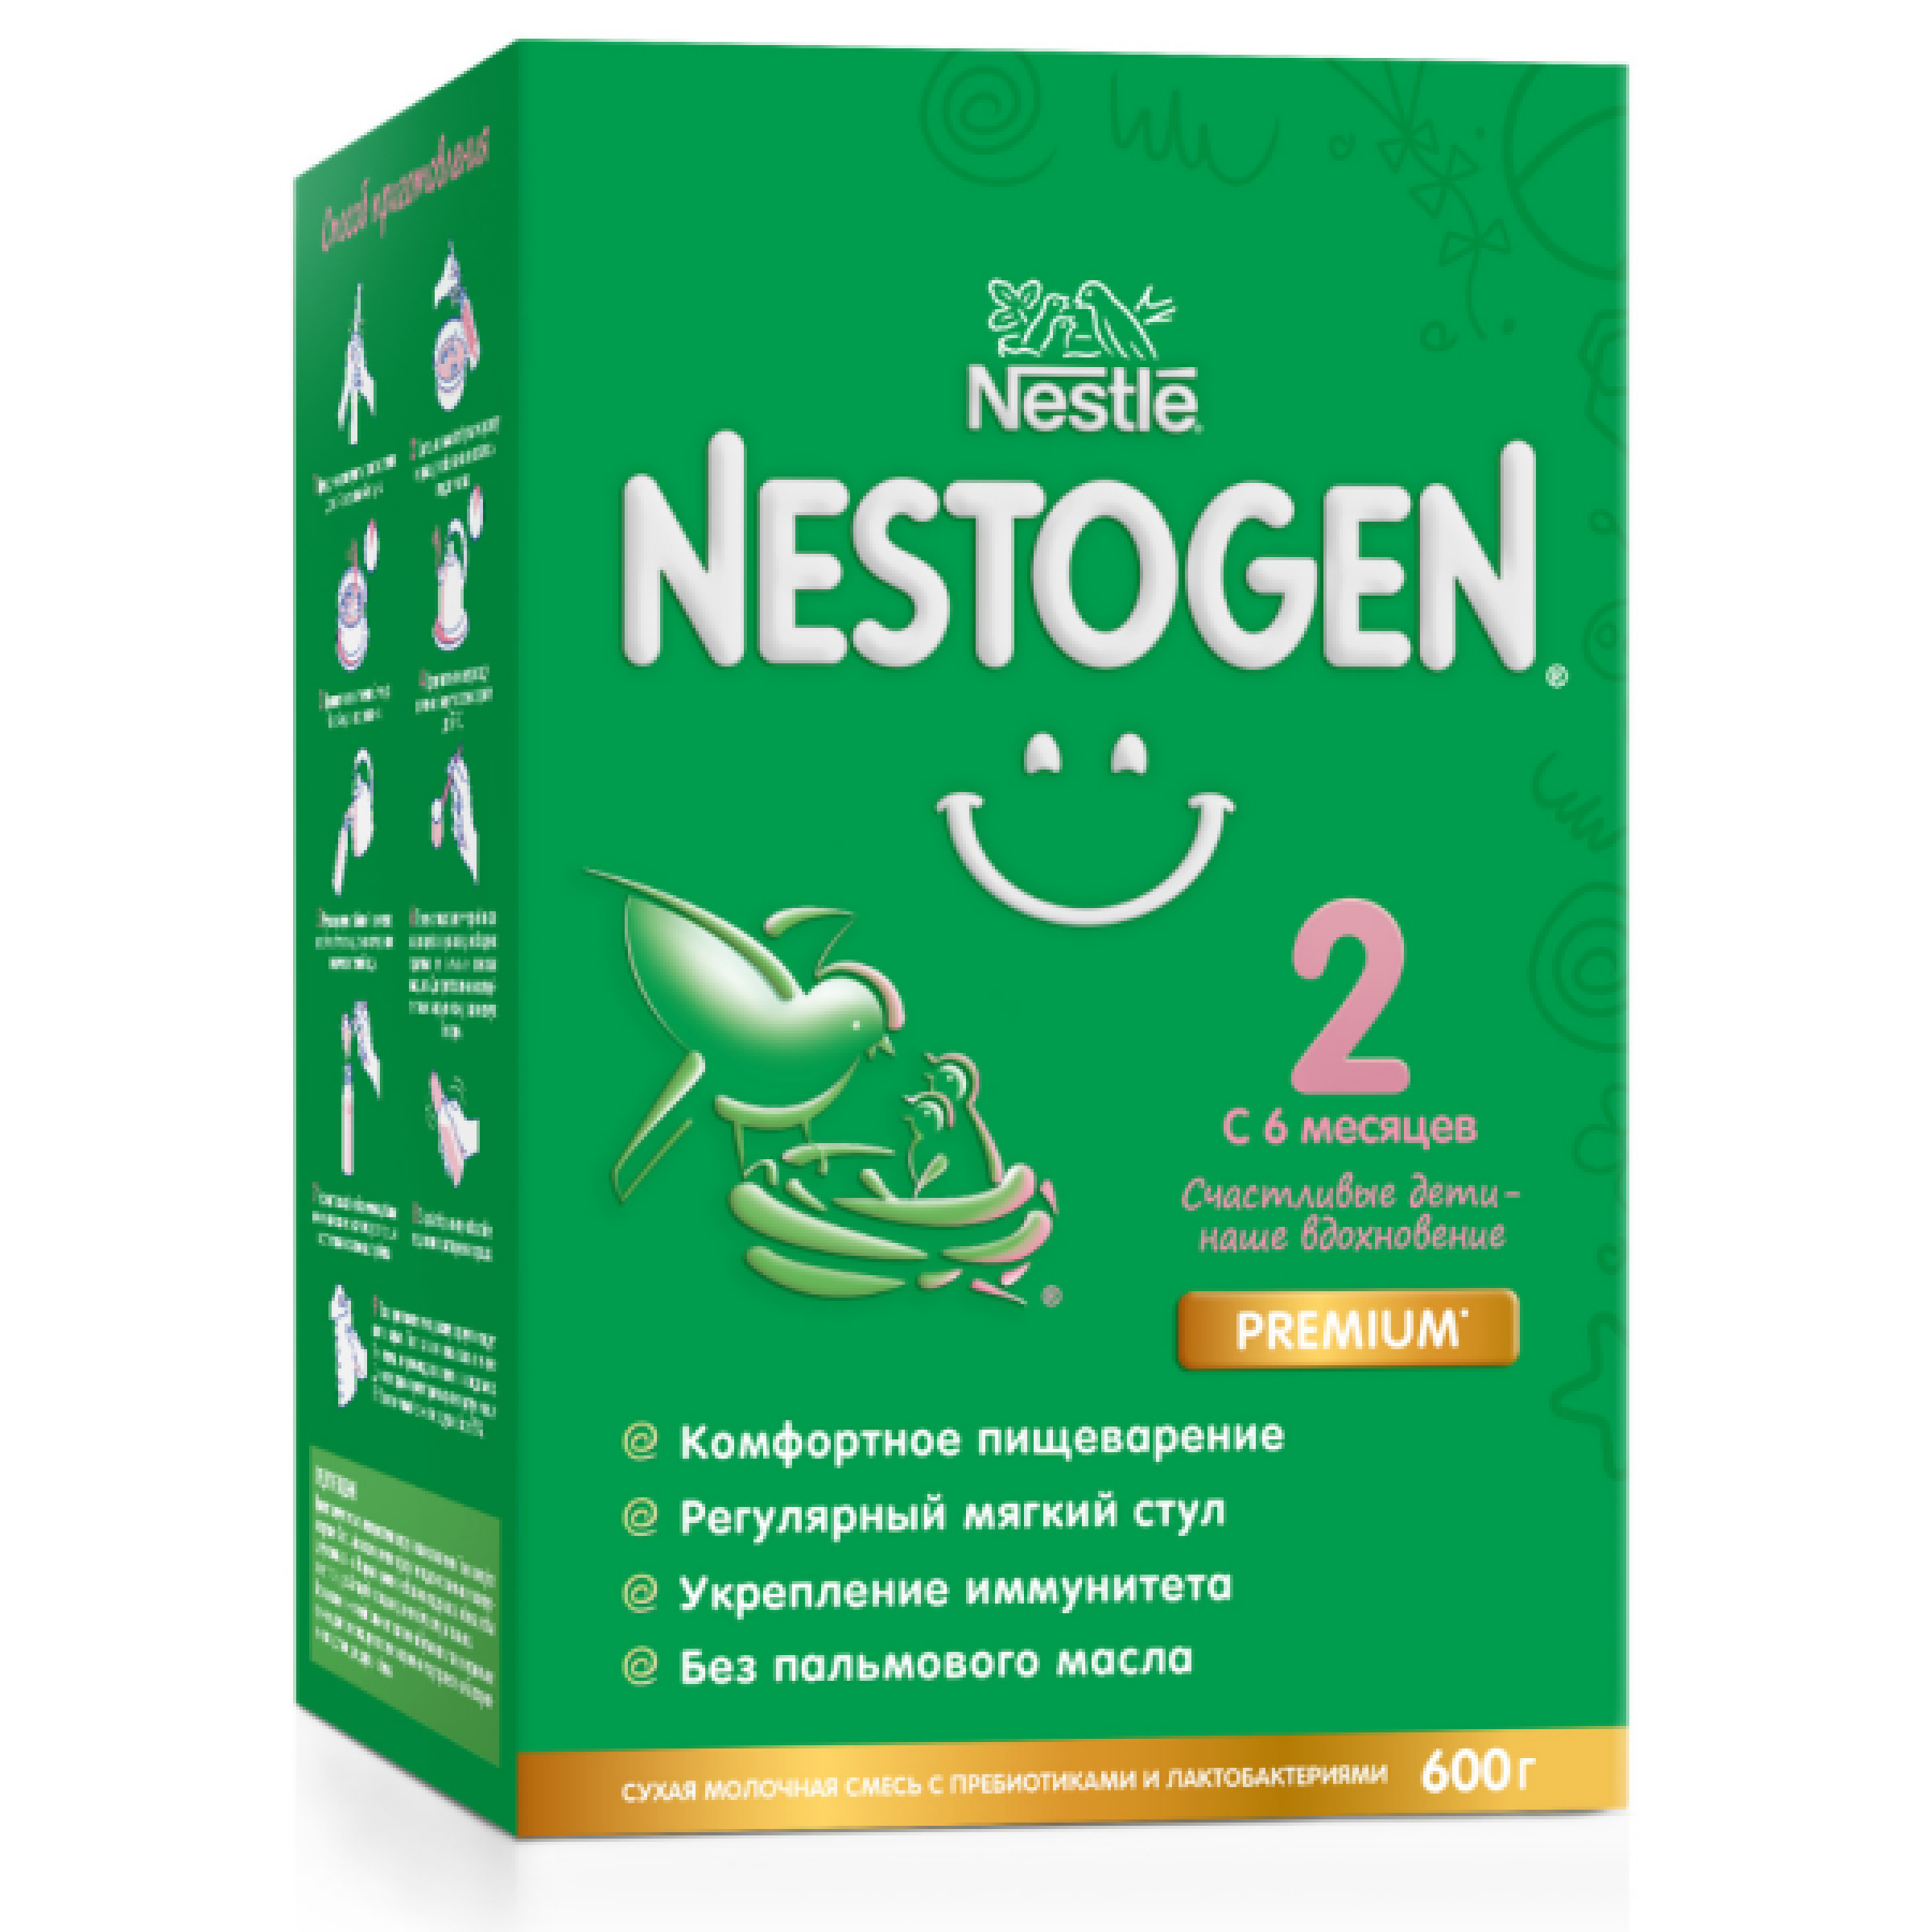 Сухой быстрорастворимый молочный напиток Nestogen 2 для детей с 6 месяцев с пребиотиками и лактобактериями 600 г